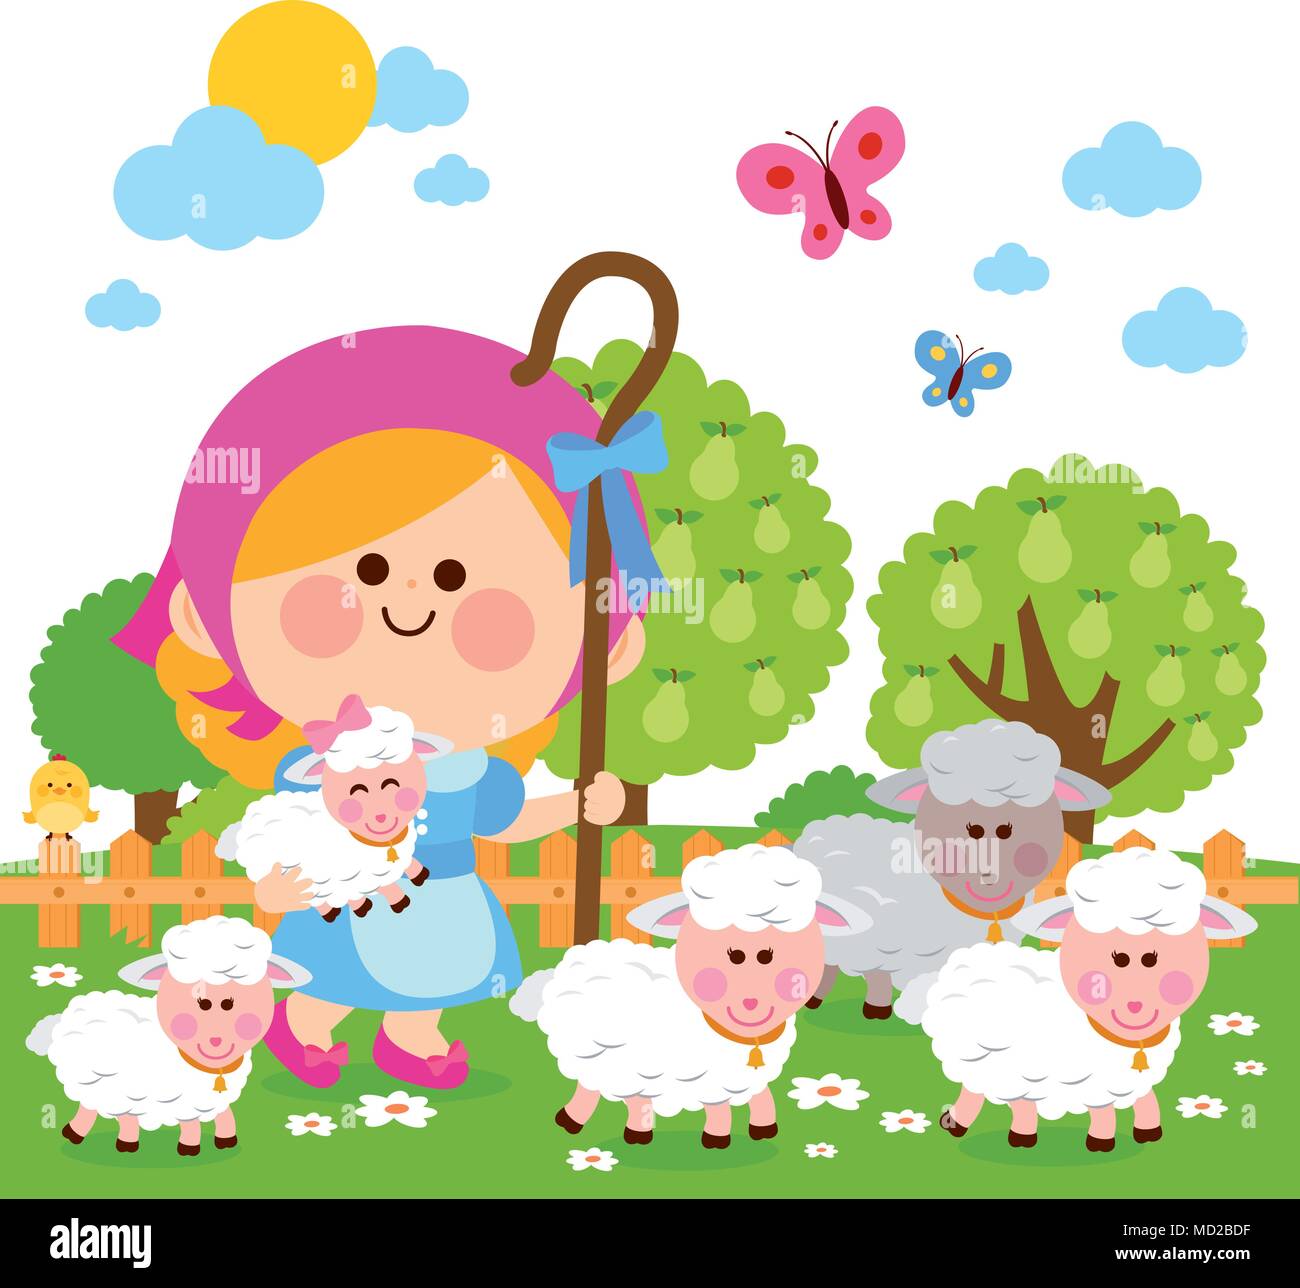 Little shepherdess girl with sheep. Vector illustration Stock Vector